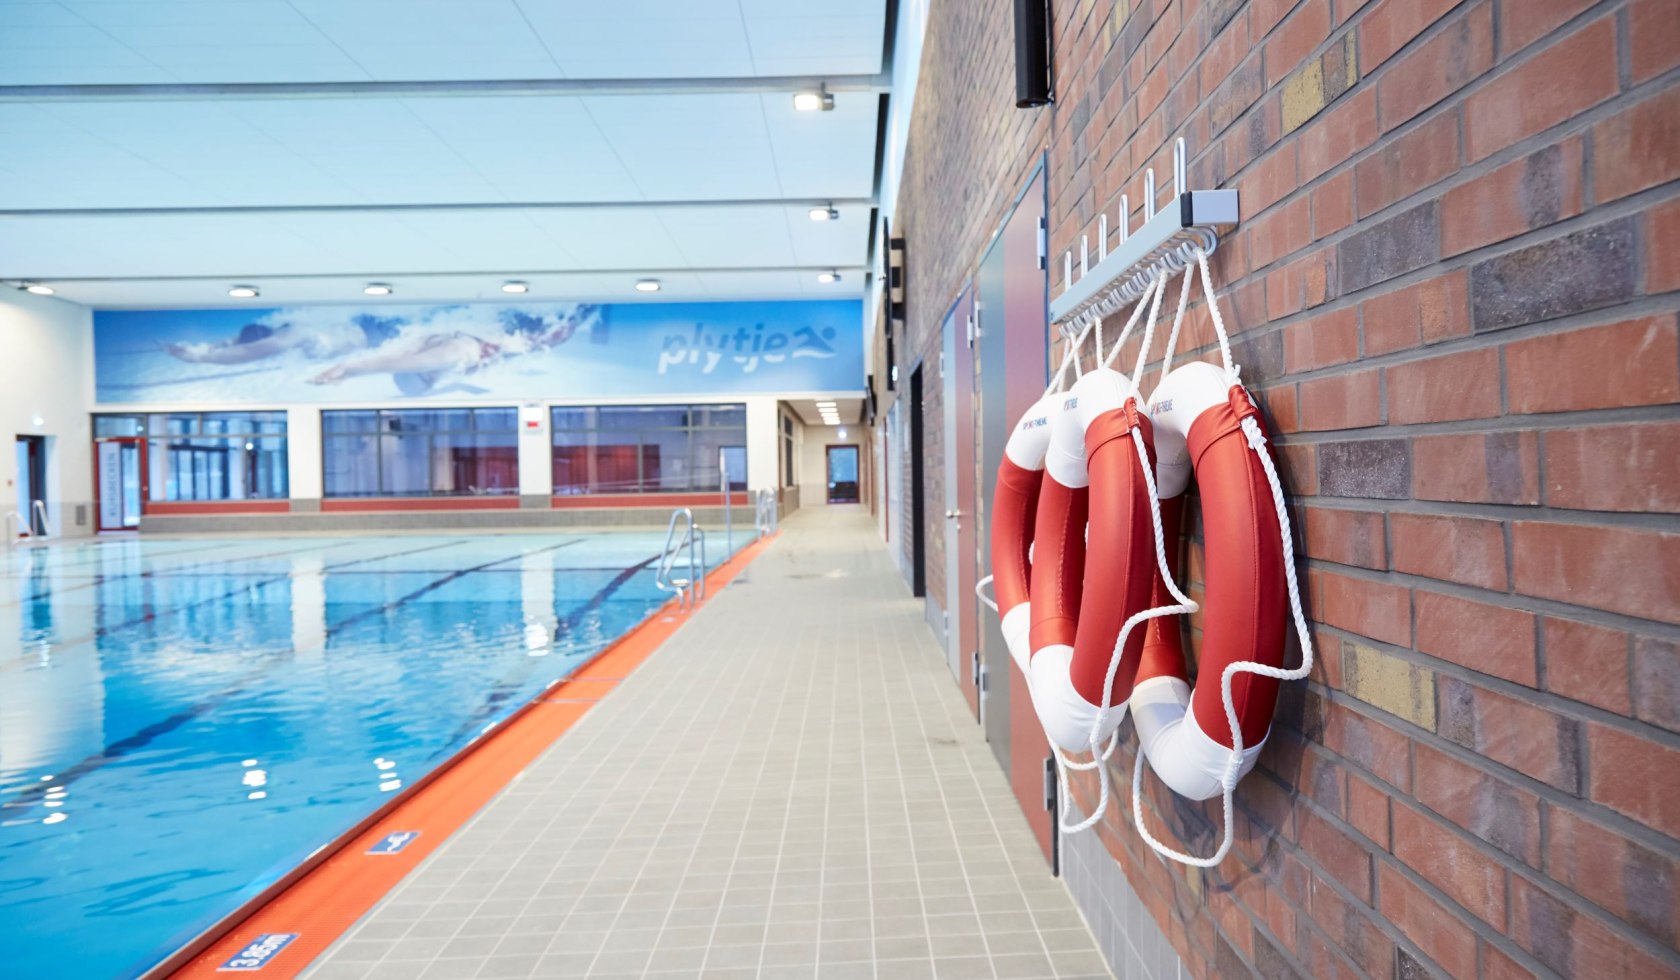 Blick auf das Sportbecken. Schwimmringe hängen an der Wand., © Plytje/ Torsten Kollmar